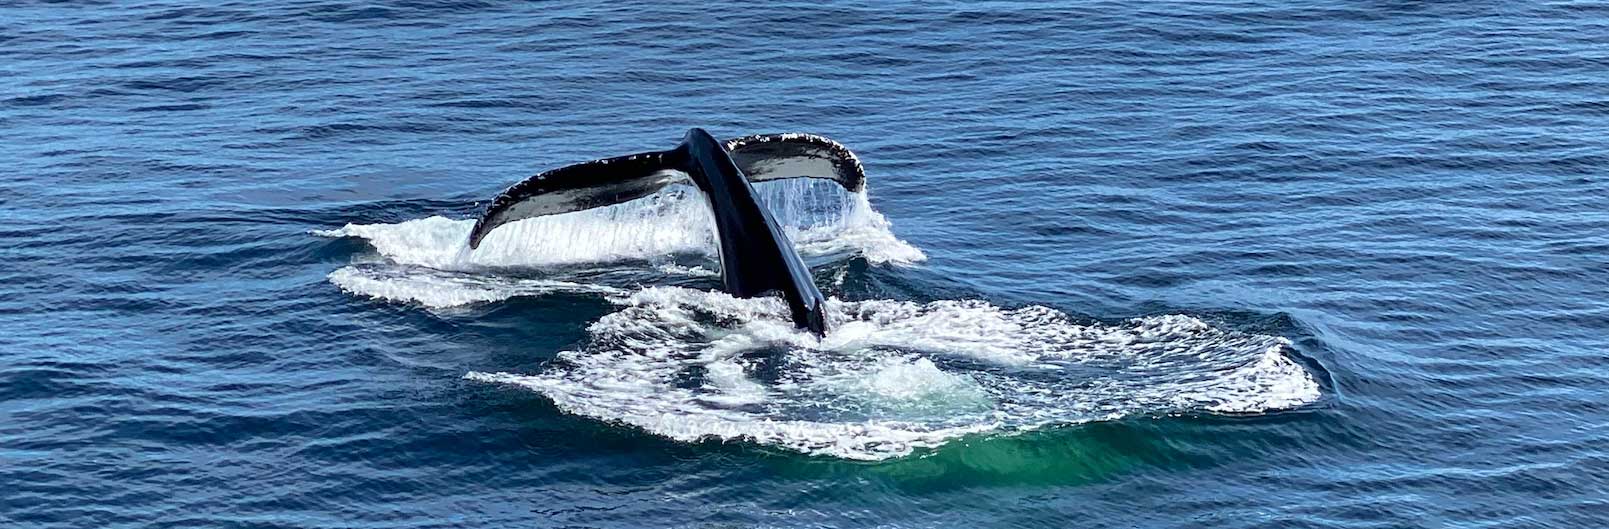 La queue d'une baleine descendant sous l'eau.